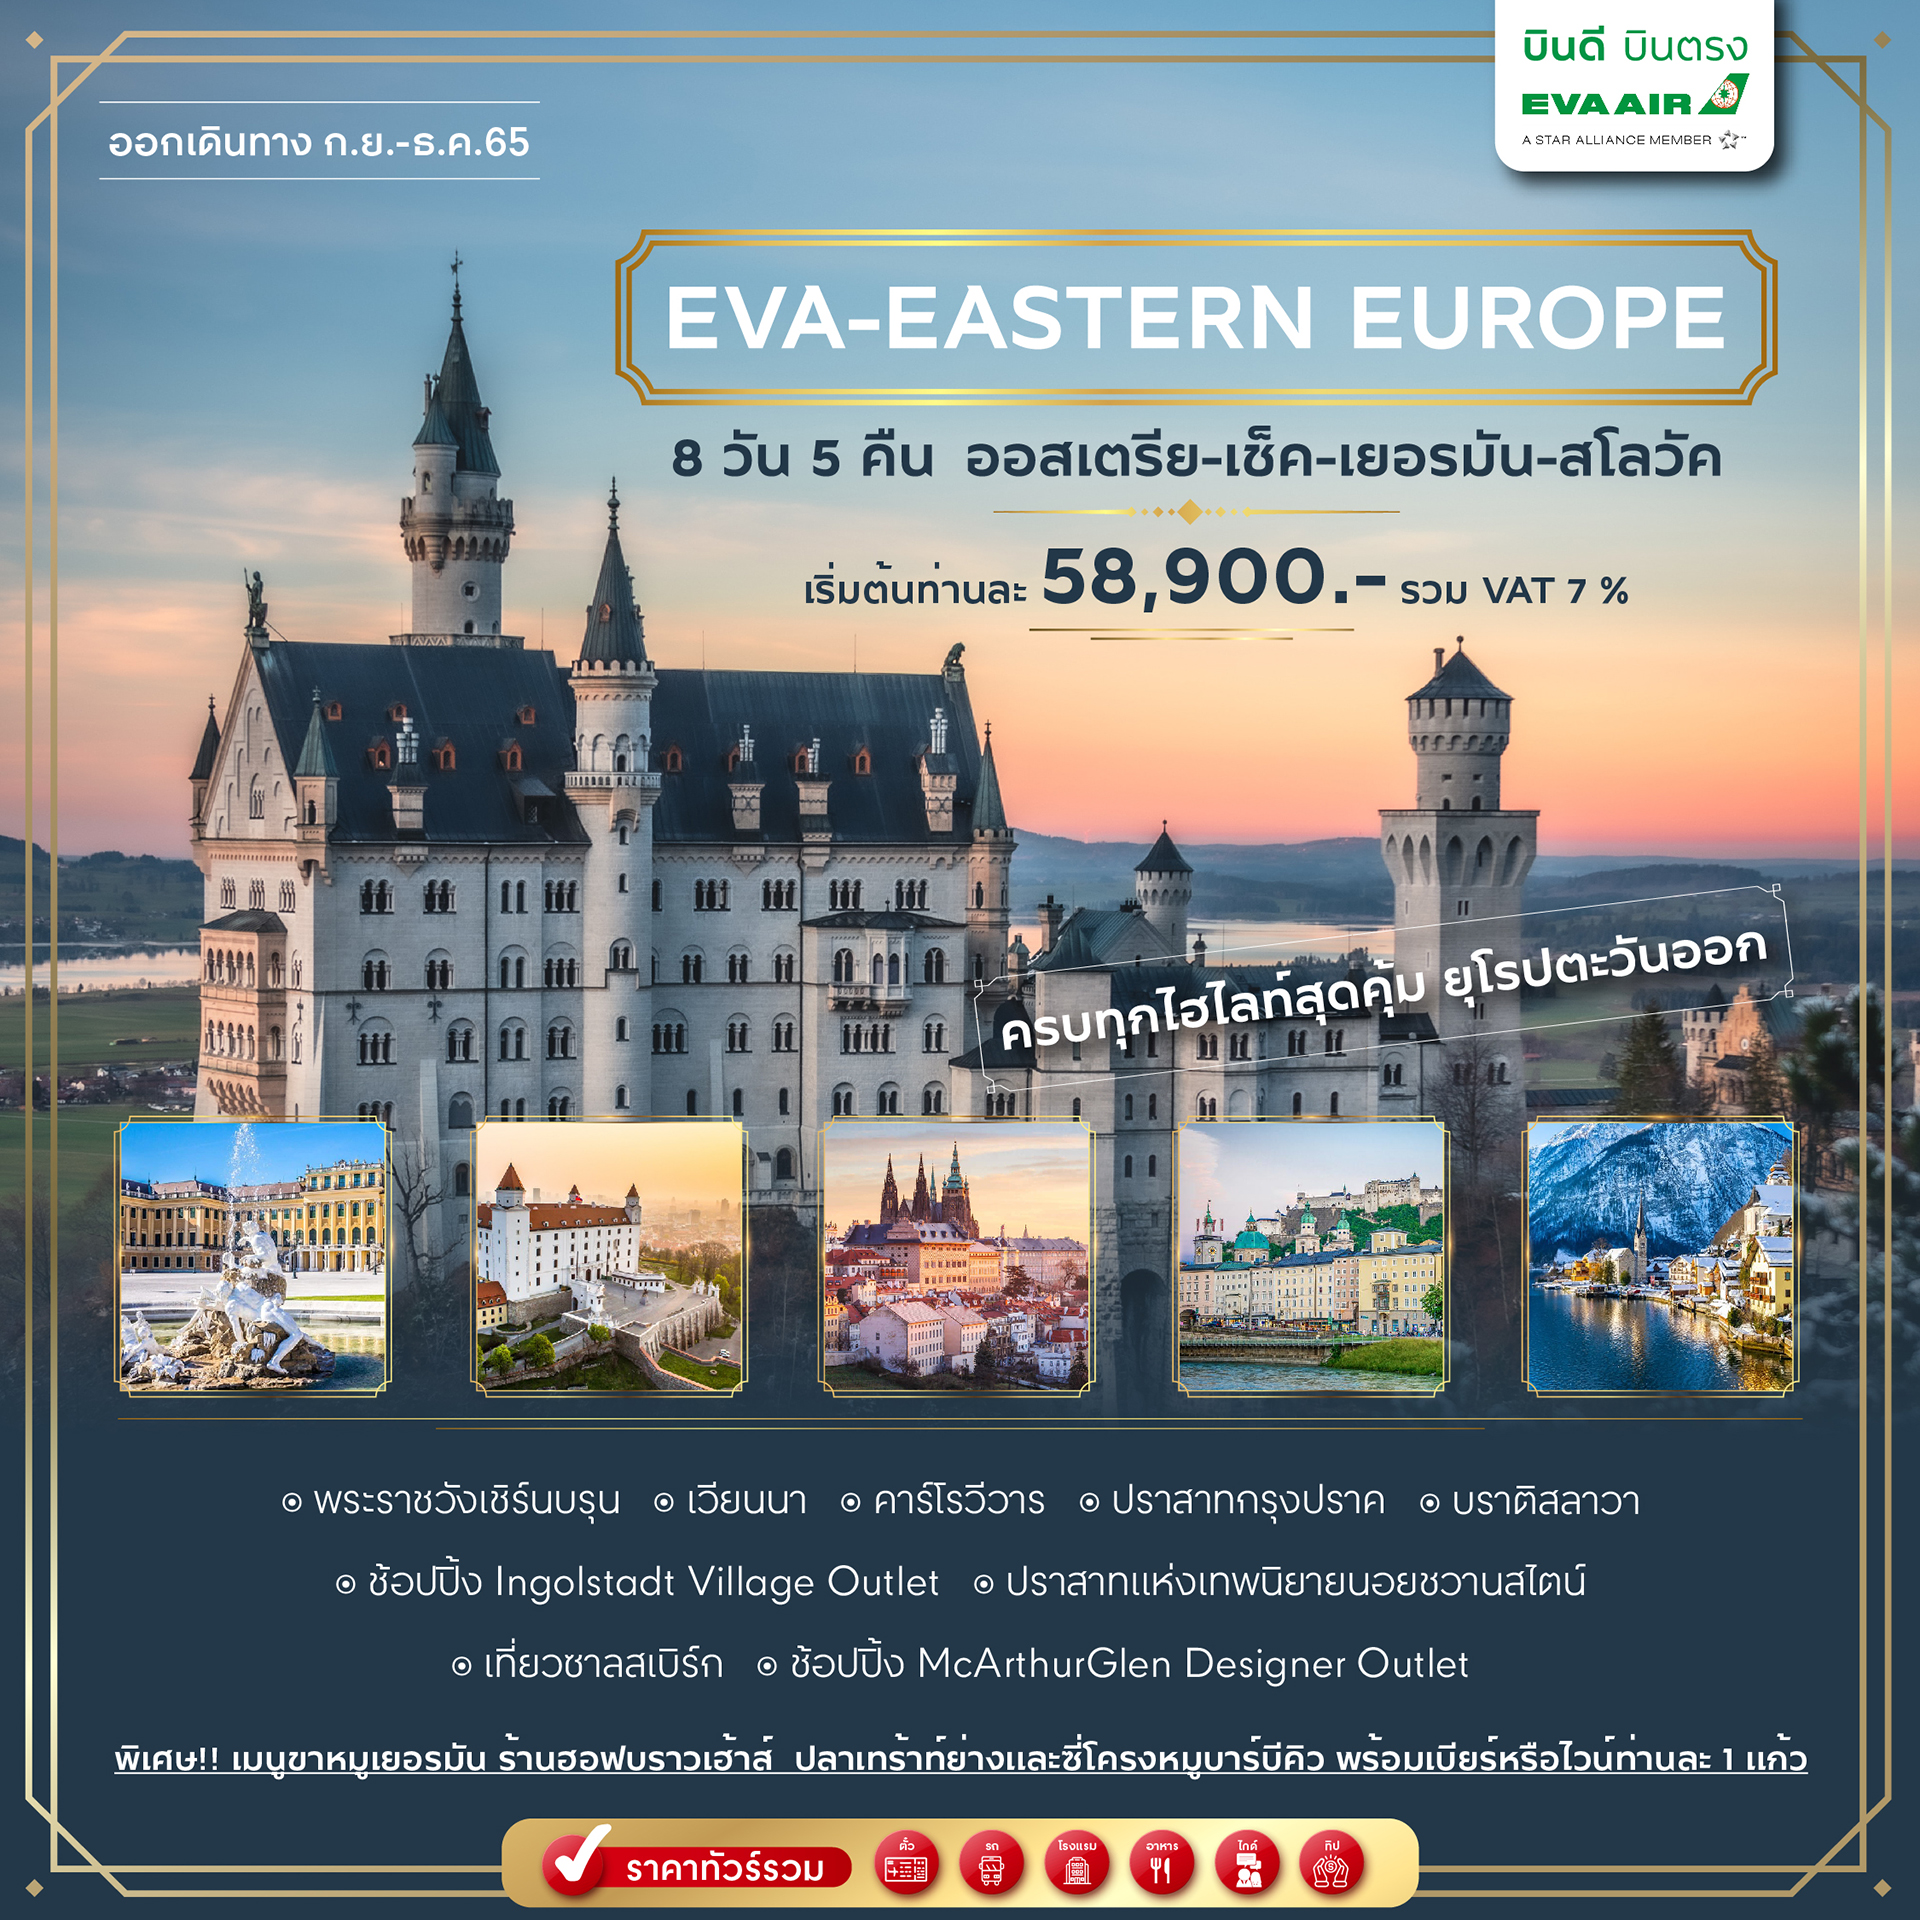 EVA-Eastern Europe ครบทุกไฮไลท์สุดคุ้ม ยุโรปตะวันออก 8 วัน 5 คืน ออสเตรีย-เช็ค-เยอรมัน-สโลวัก